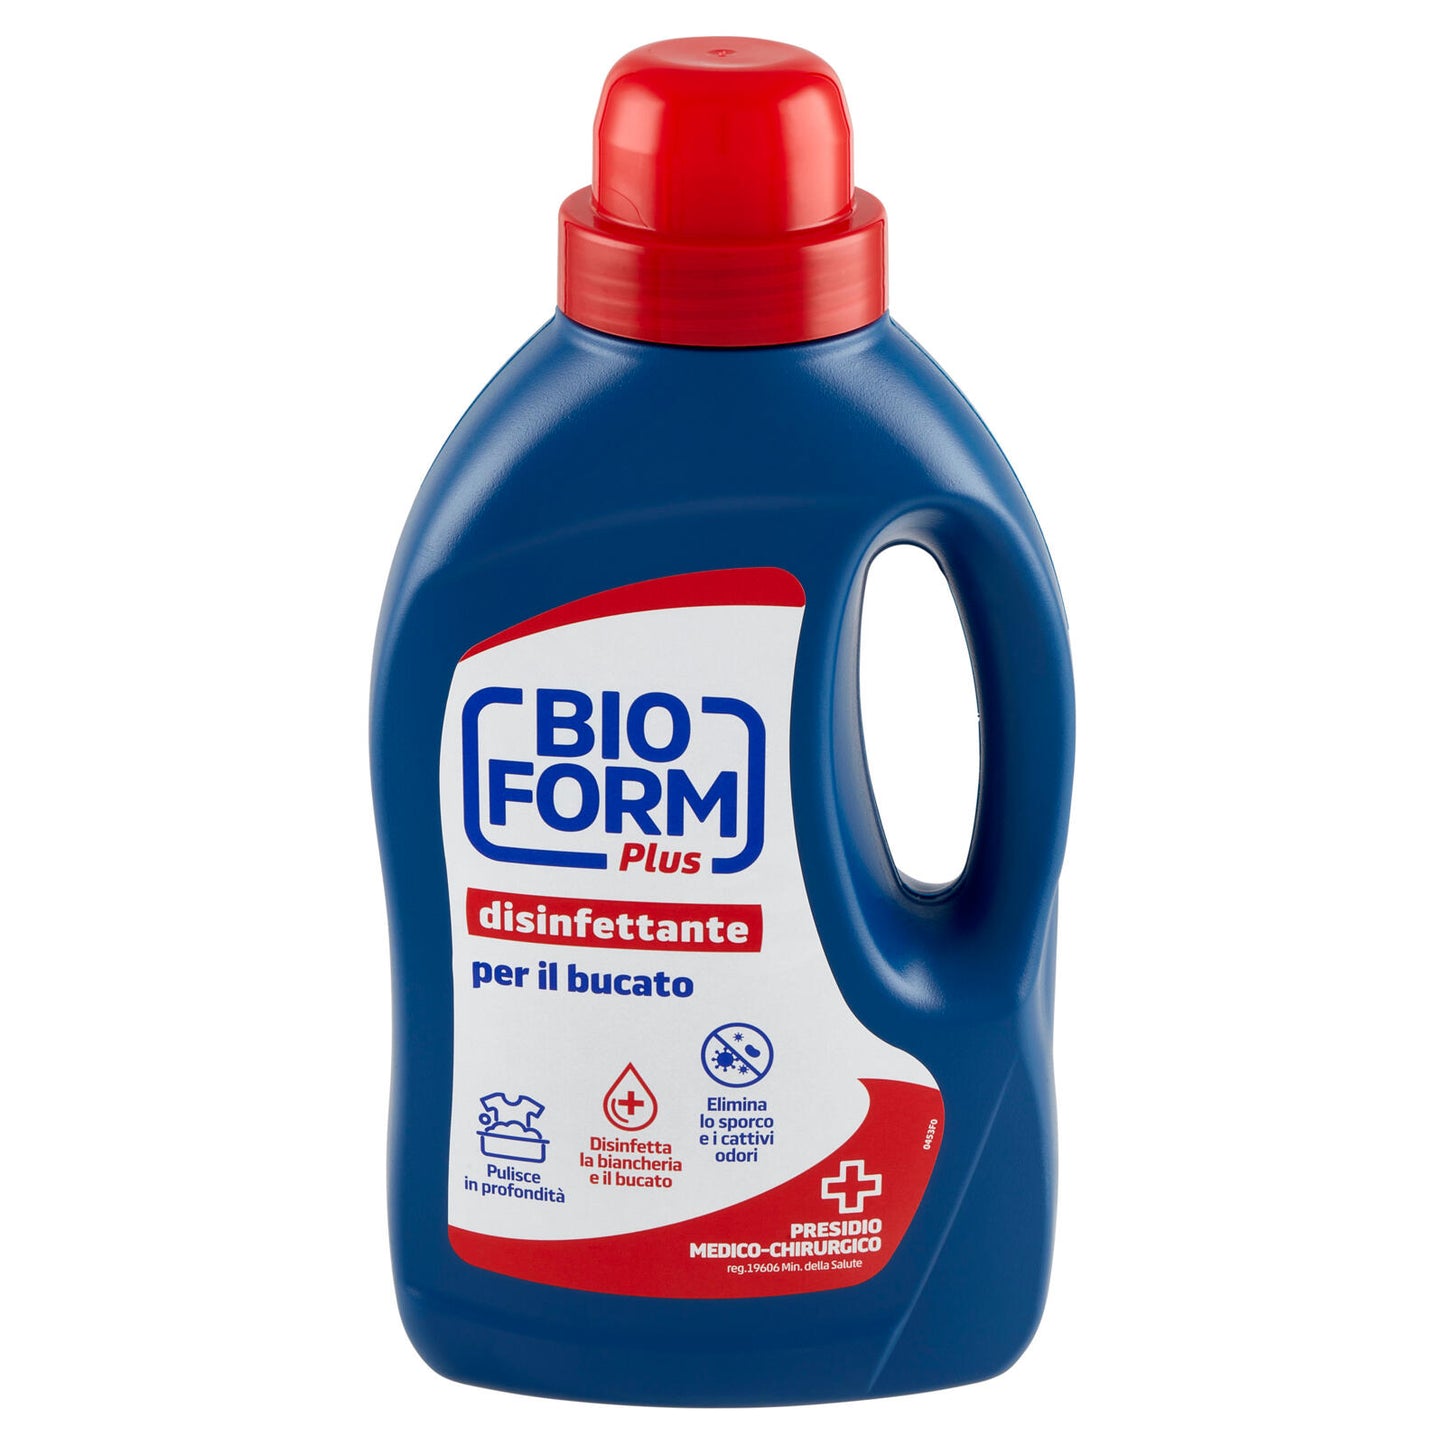 Bioform Plus Disinfettante per il bucato 1,3 L